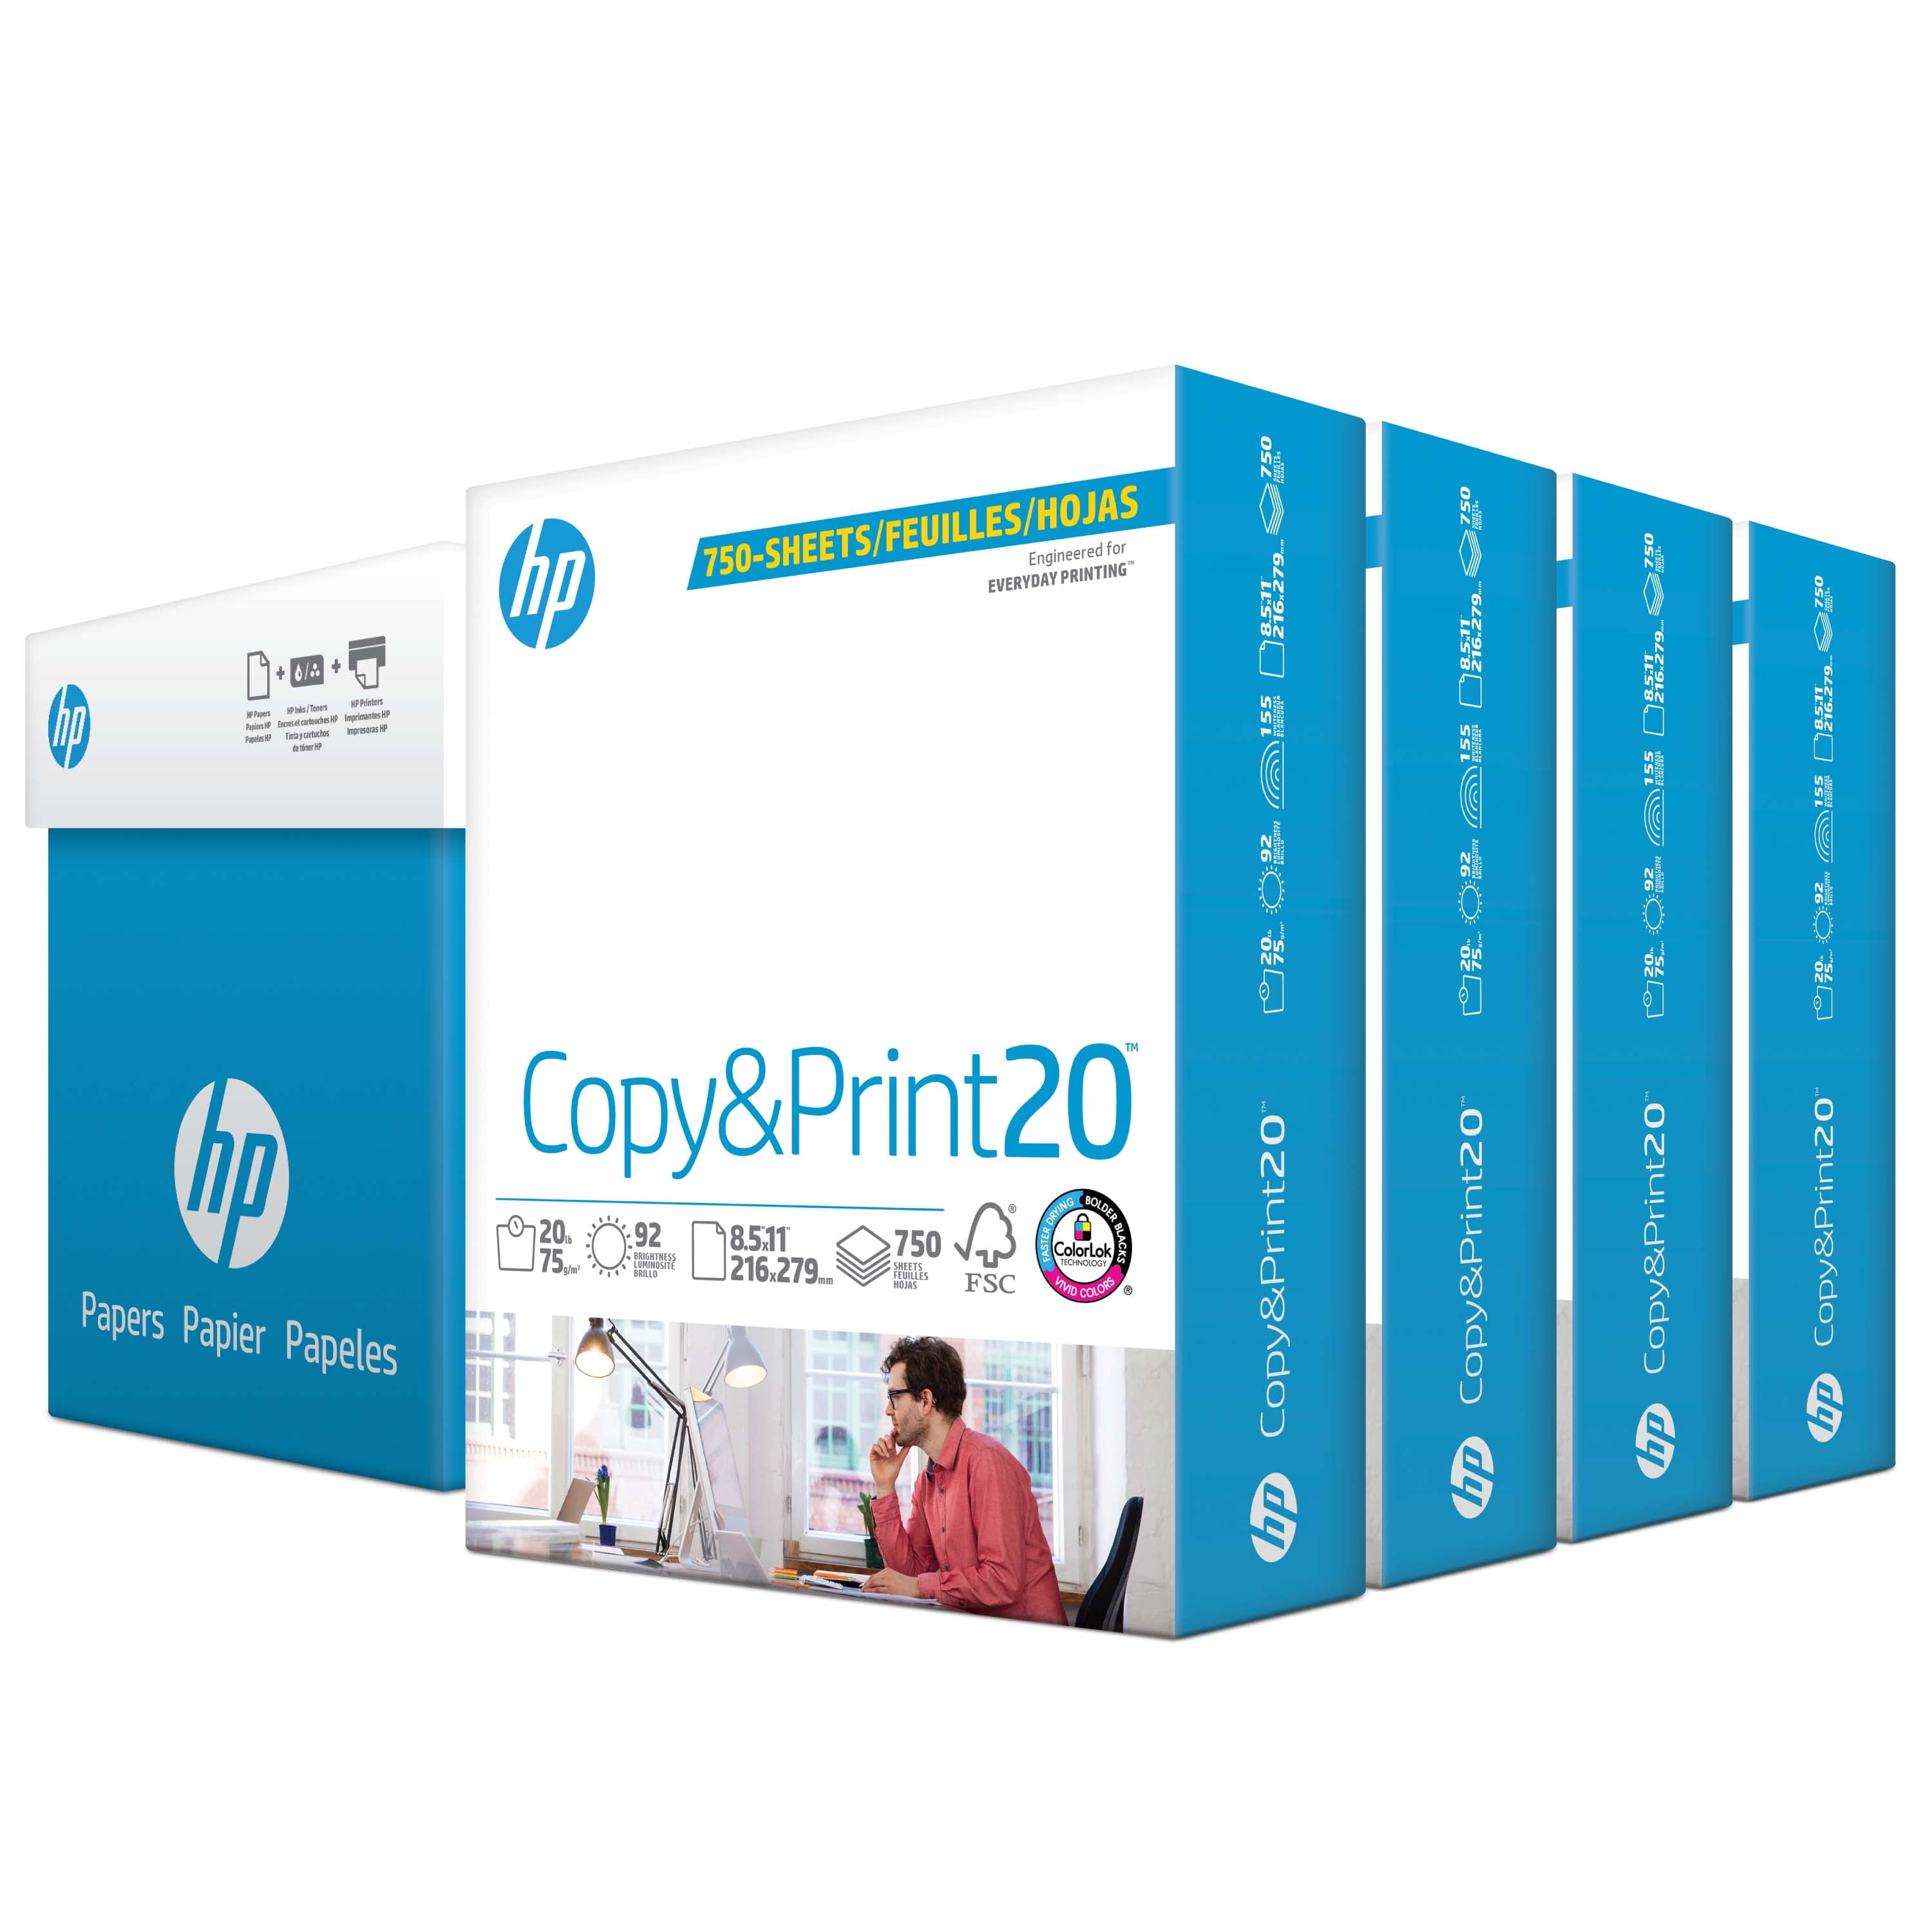 HP Copy & Print20, 20lb, 8.5 x 11, White, 750 sheets 